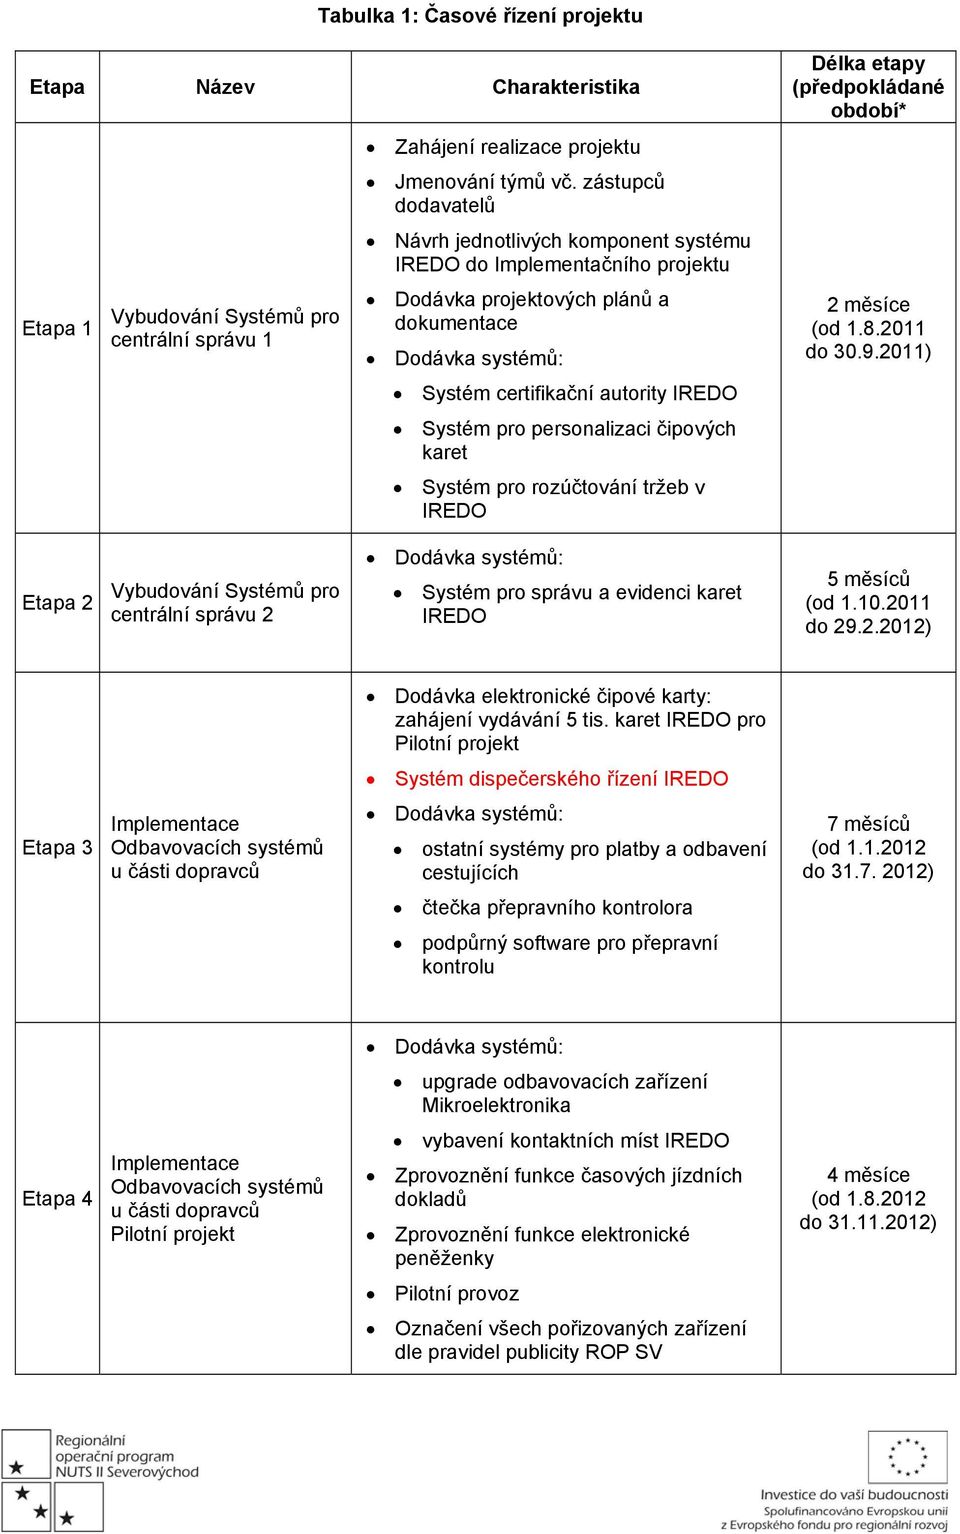 personalizaci čipových karet Systém pro rozúčtování tržeb v IREDO Délka etapy (předpokládané období* 2 měsíce (od 1.8.2011 do 30.9.